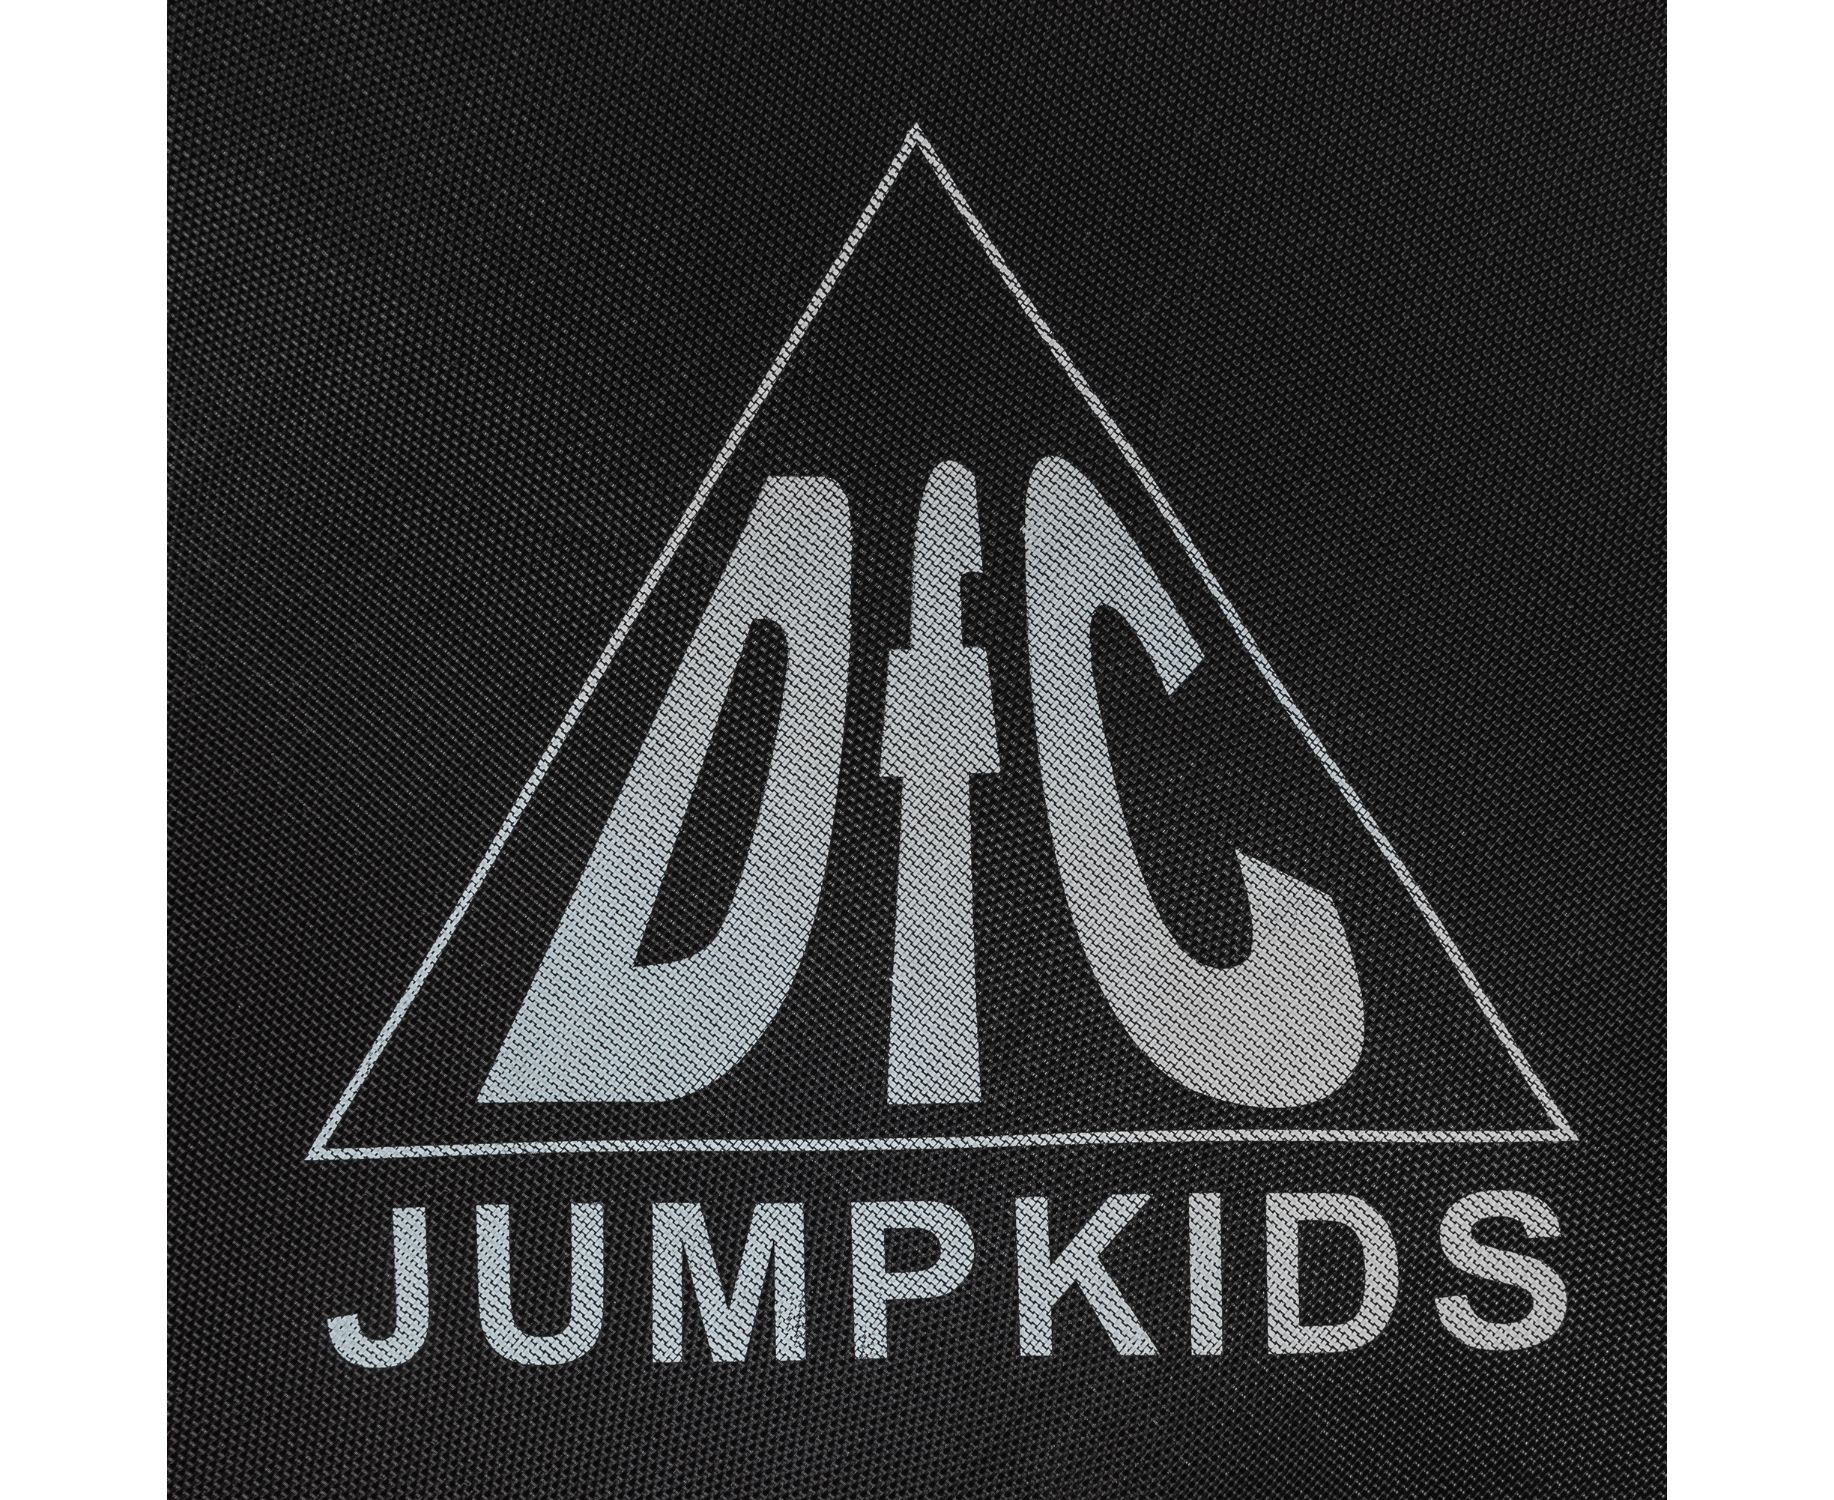 Батут DFC Jump kids 55" (137см) 55INCH-JD-RYB красно-желто-синий 1834_1500